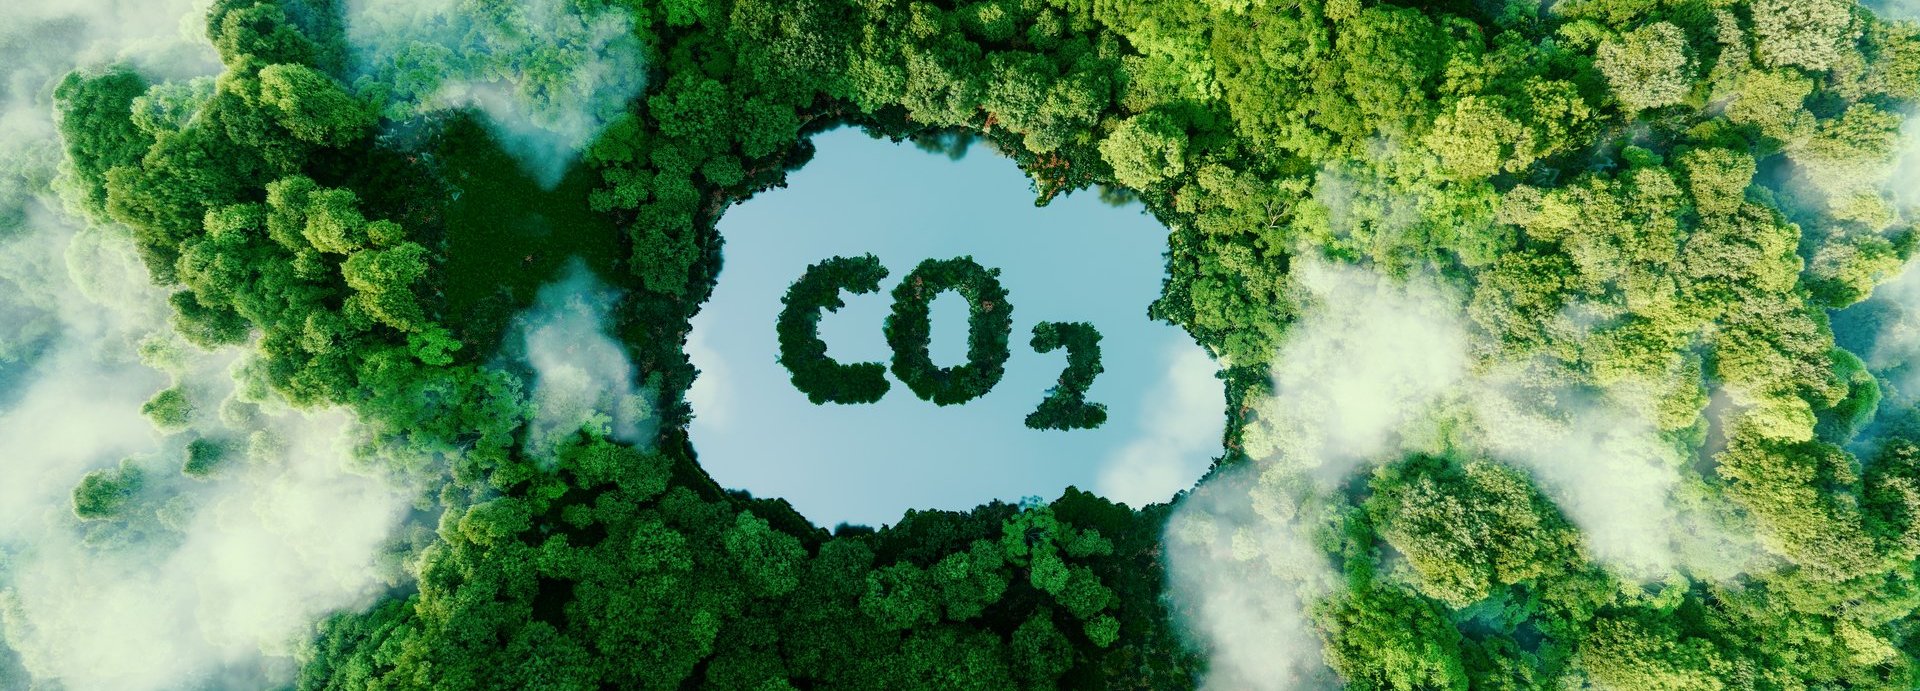 Konzept, das das Problem der Kohlendioxidemissionen und ihre Auswirkungen auf die Natur in Form eines Teichs in Form eines Co2-Symbols in einem üppigen Wald darstellt. 3D-Rendering.